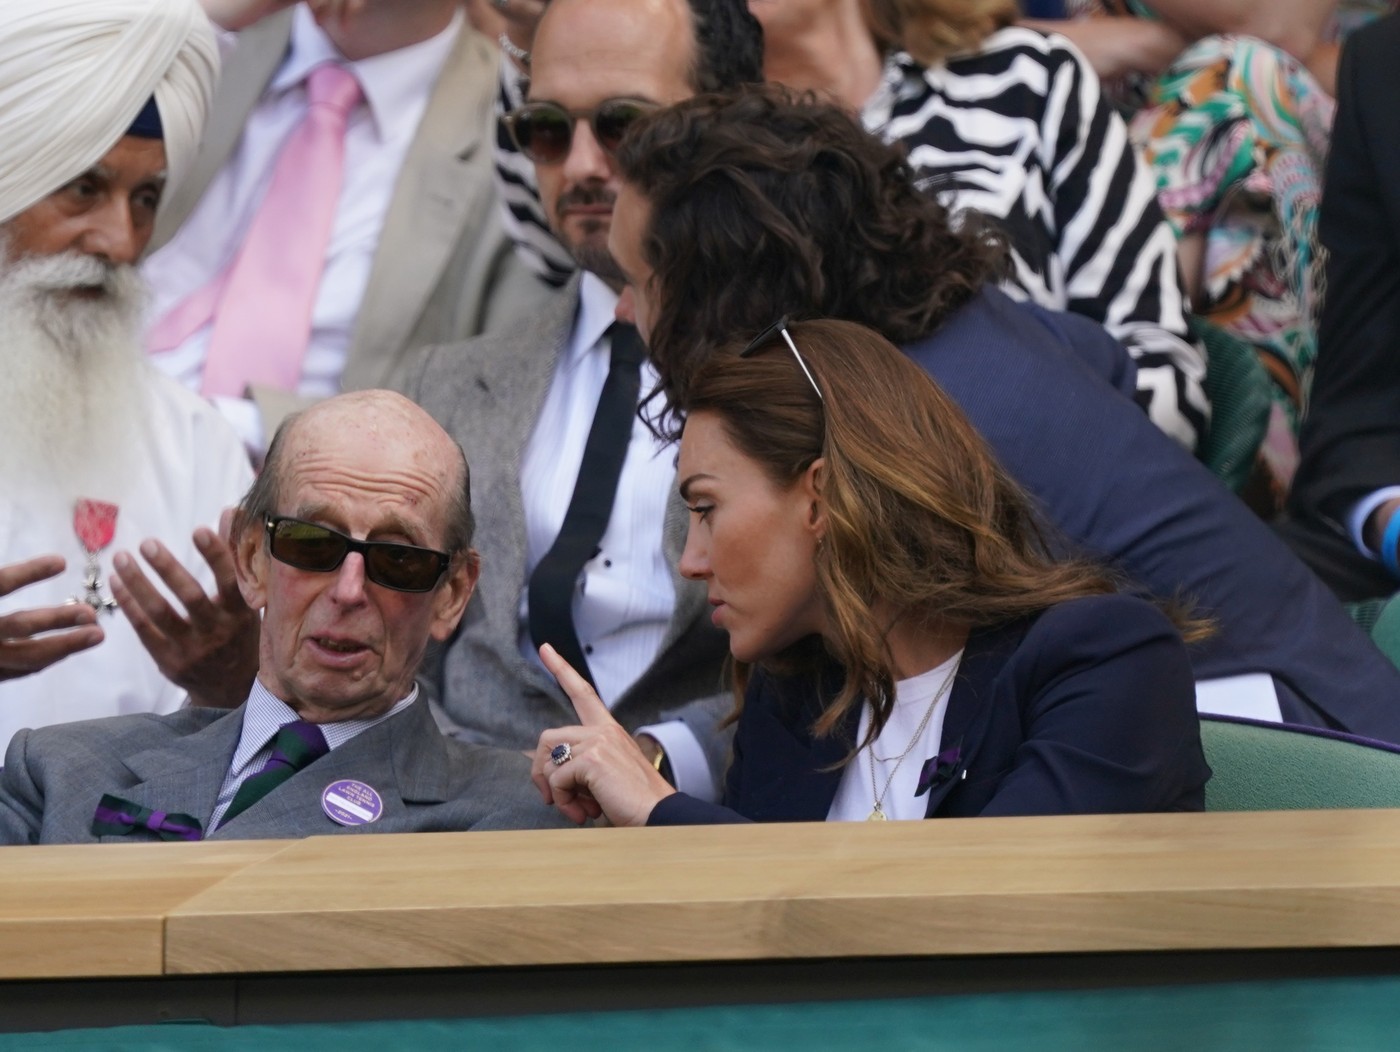 Eduárd kenti herceg és Katalin hercegné Wimbledonban